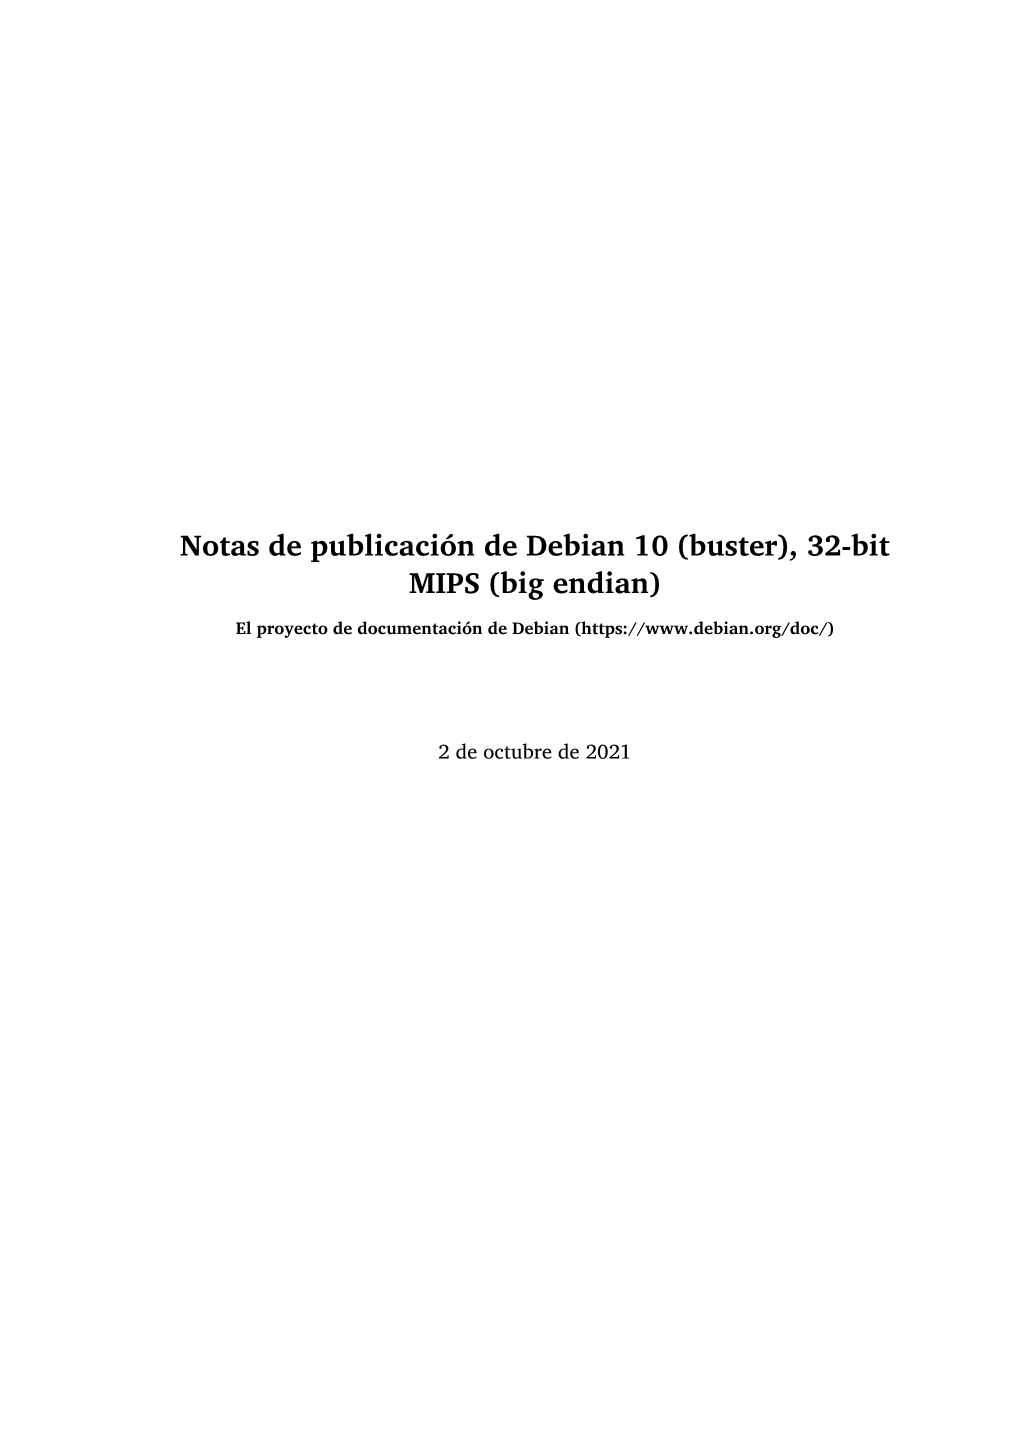 Notas De Publicación De Debian 10 (Buster), 32-Bit MIPS (Big Endian)